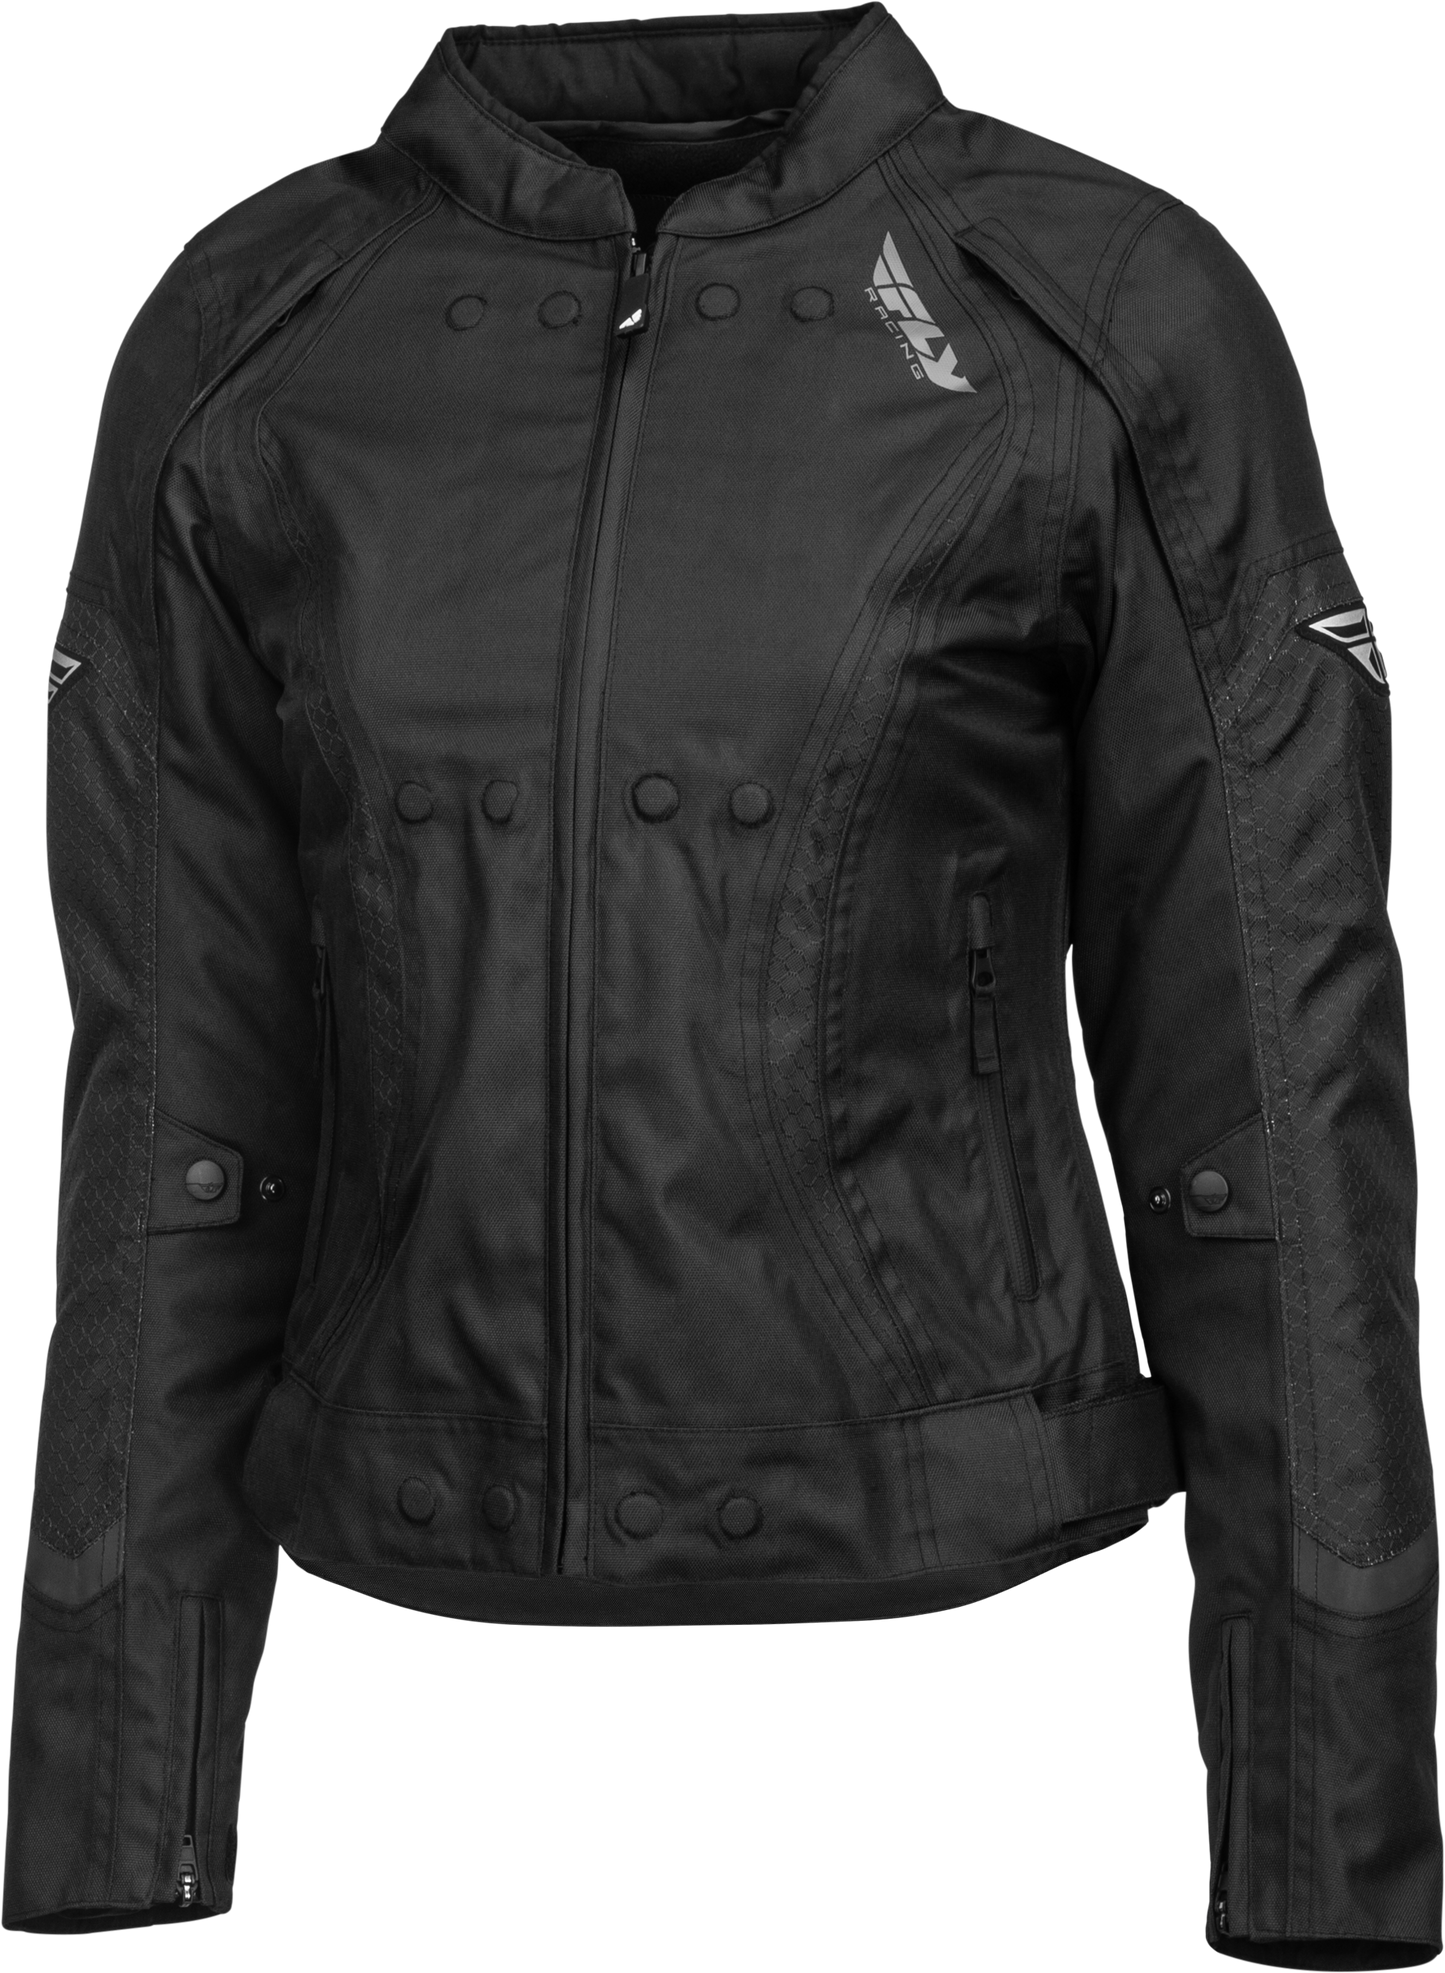 FLY RACING Women's Butane Jacket Black Md 477-7040M